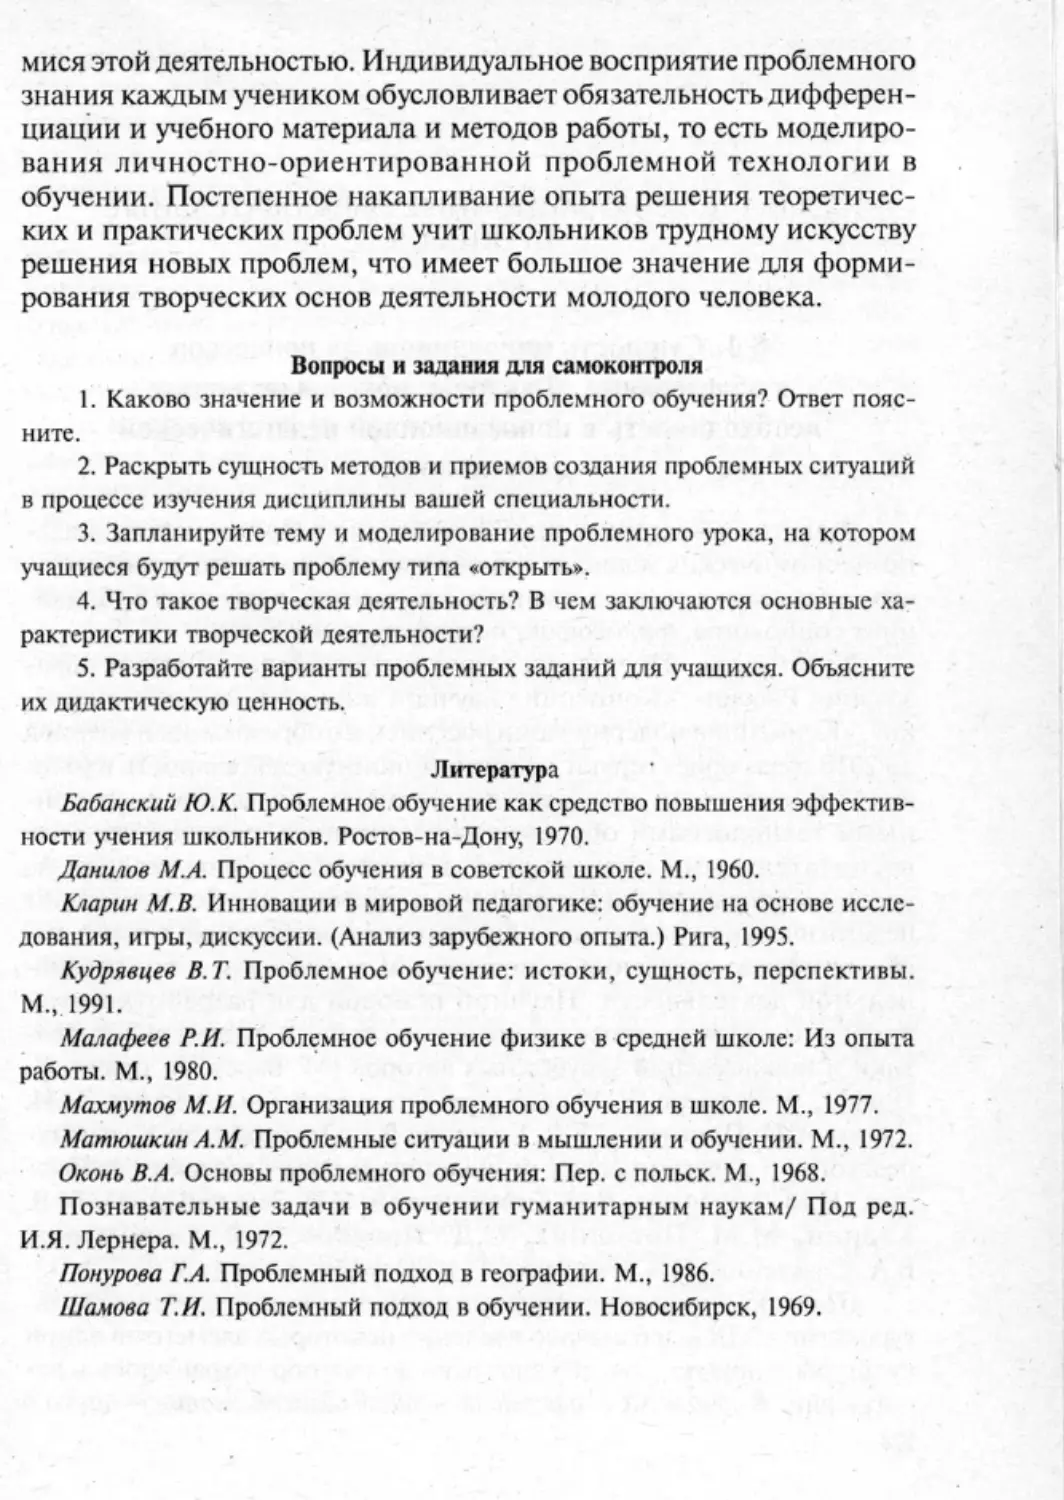 Загрекова Л.В., Николаева В.В - 0224